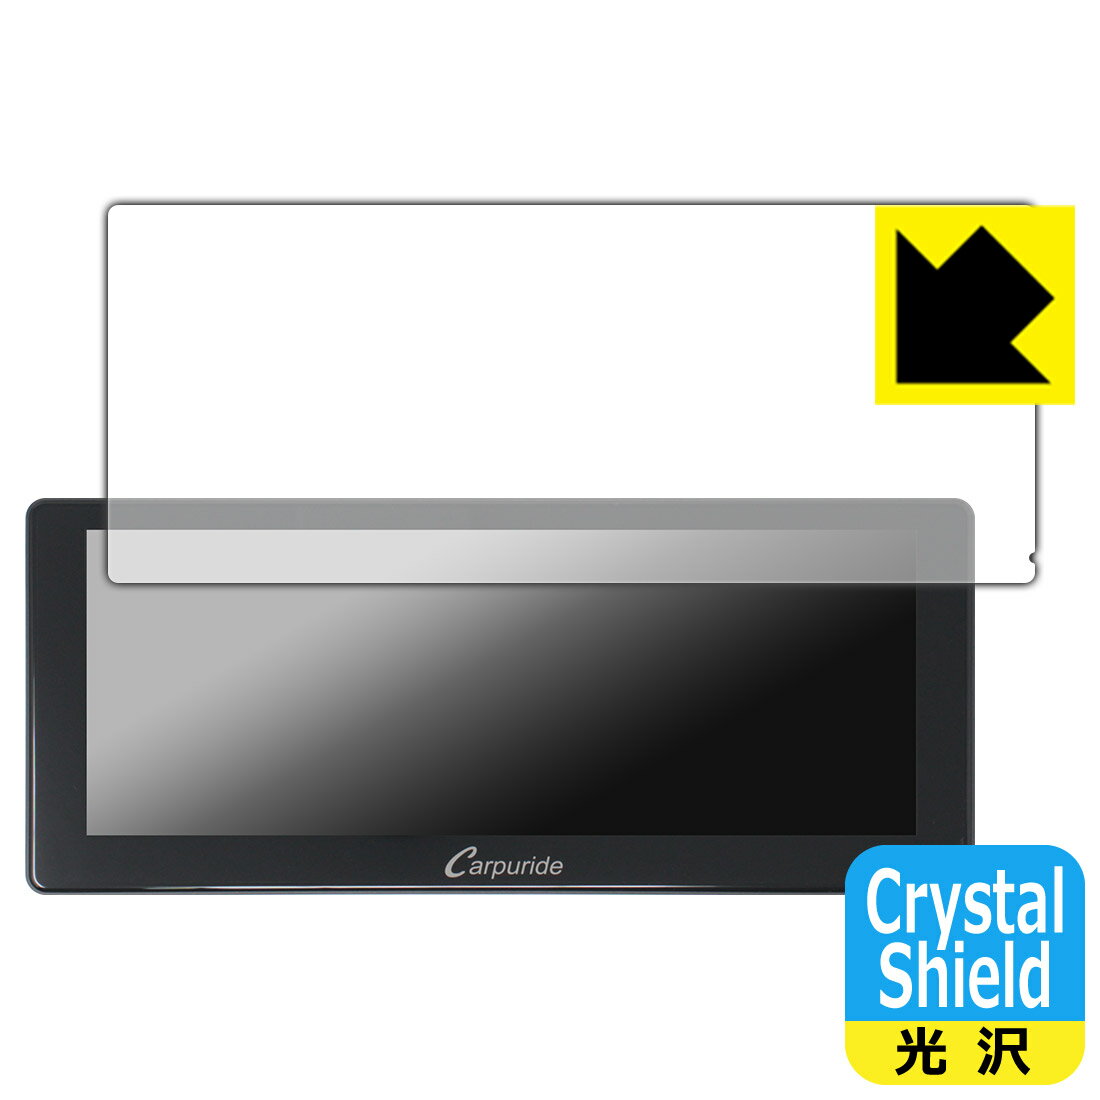 Crystal ShieldyzیtB CARPURIDE W103 / W103 Pro { А